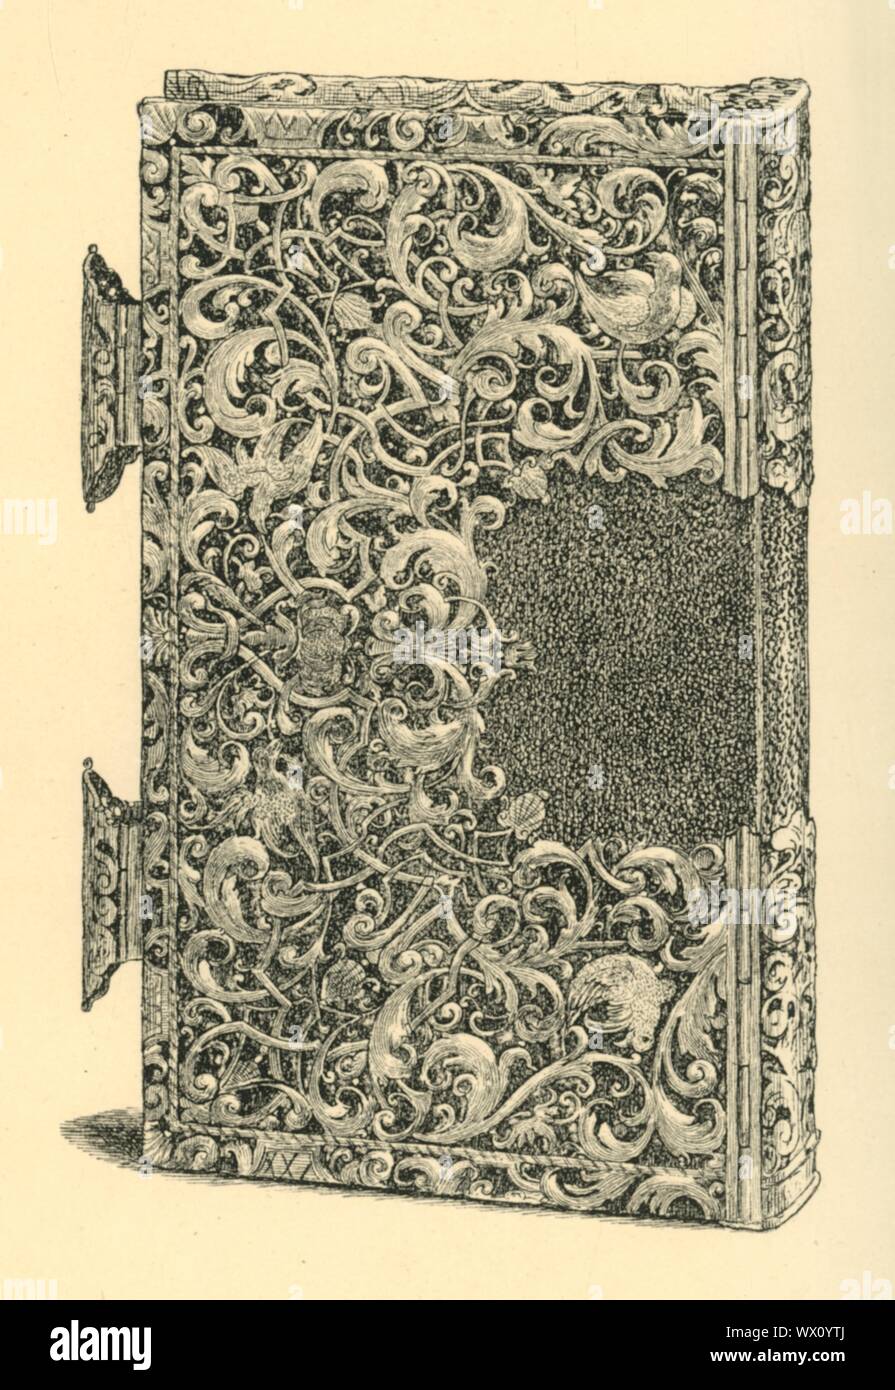 Argent doré, couverture de livre (1881). Gravure sur une couverture de  livre en filigrane, sur la liste de la catégorie 'faux'. À partir de "le  South Kensington Museum", un livre d'illustrations gravées,